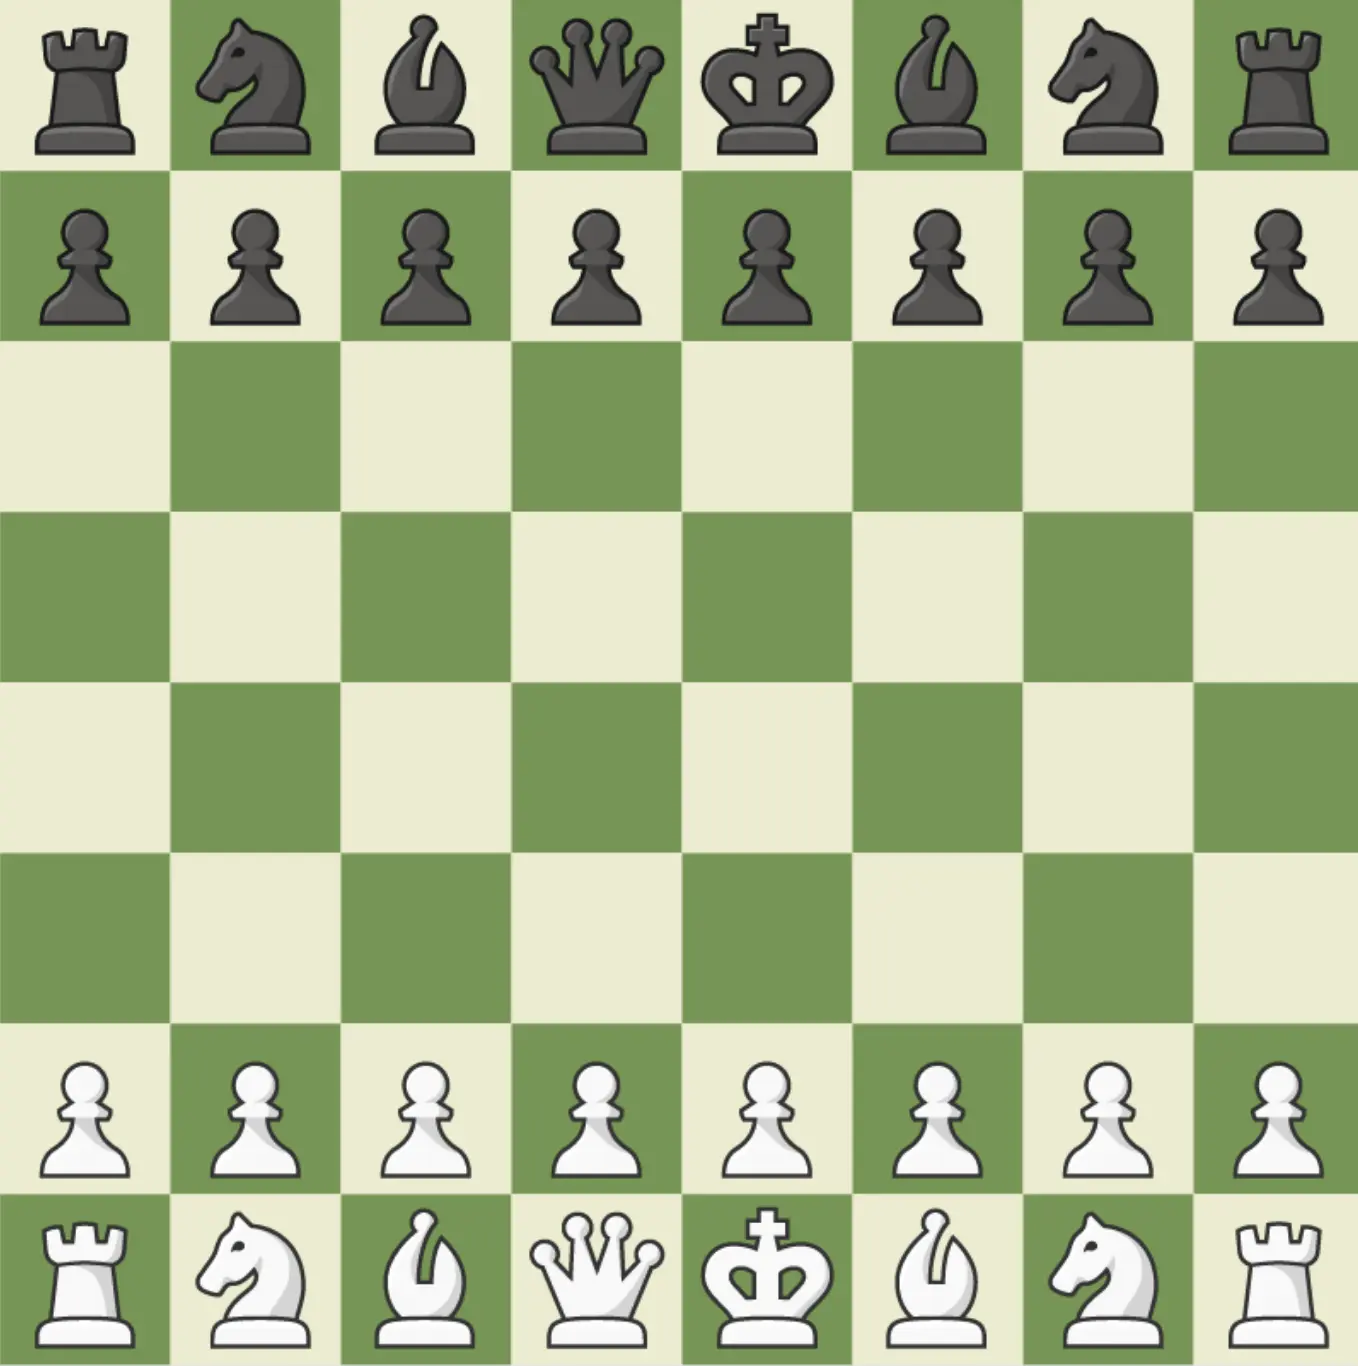 Chess game screenshot